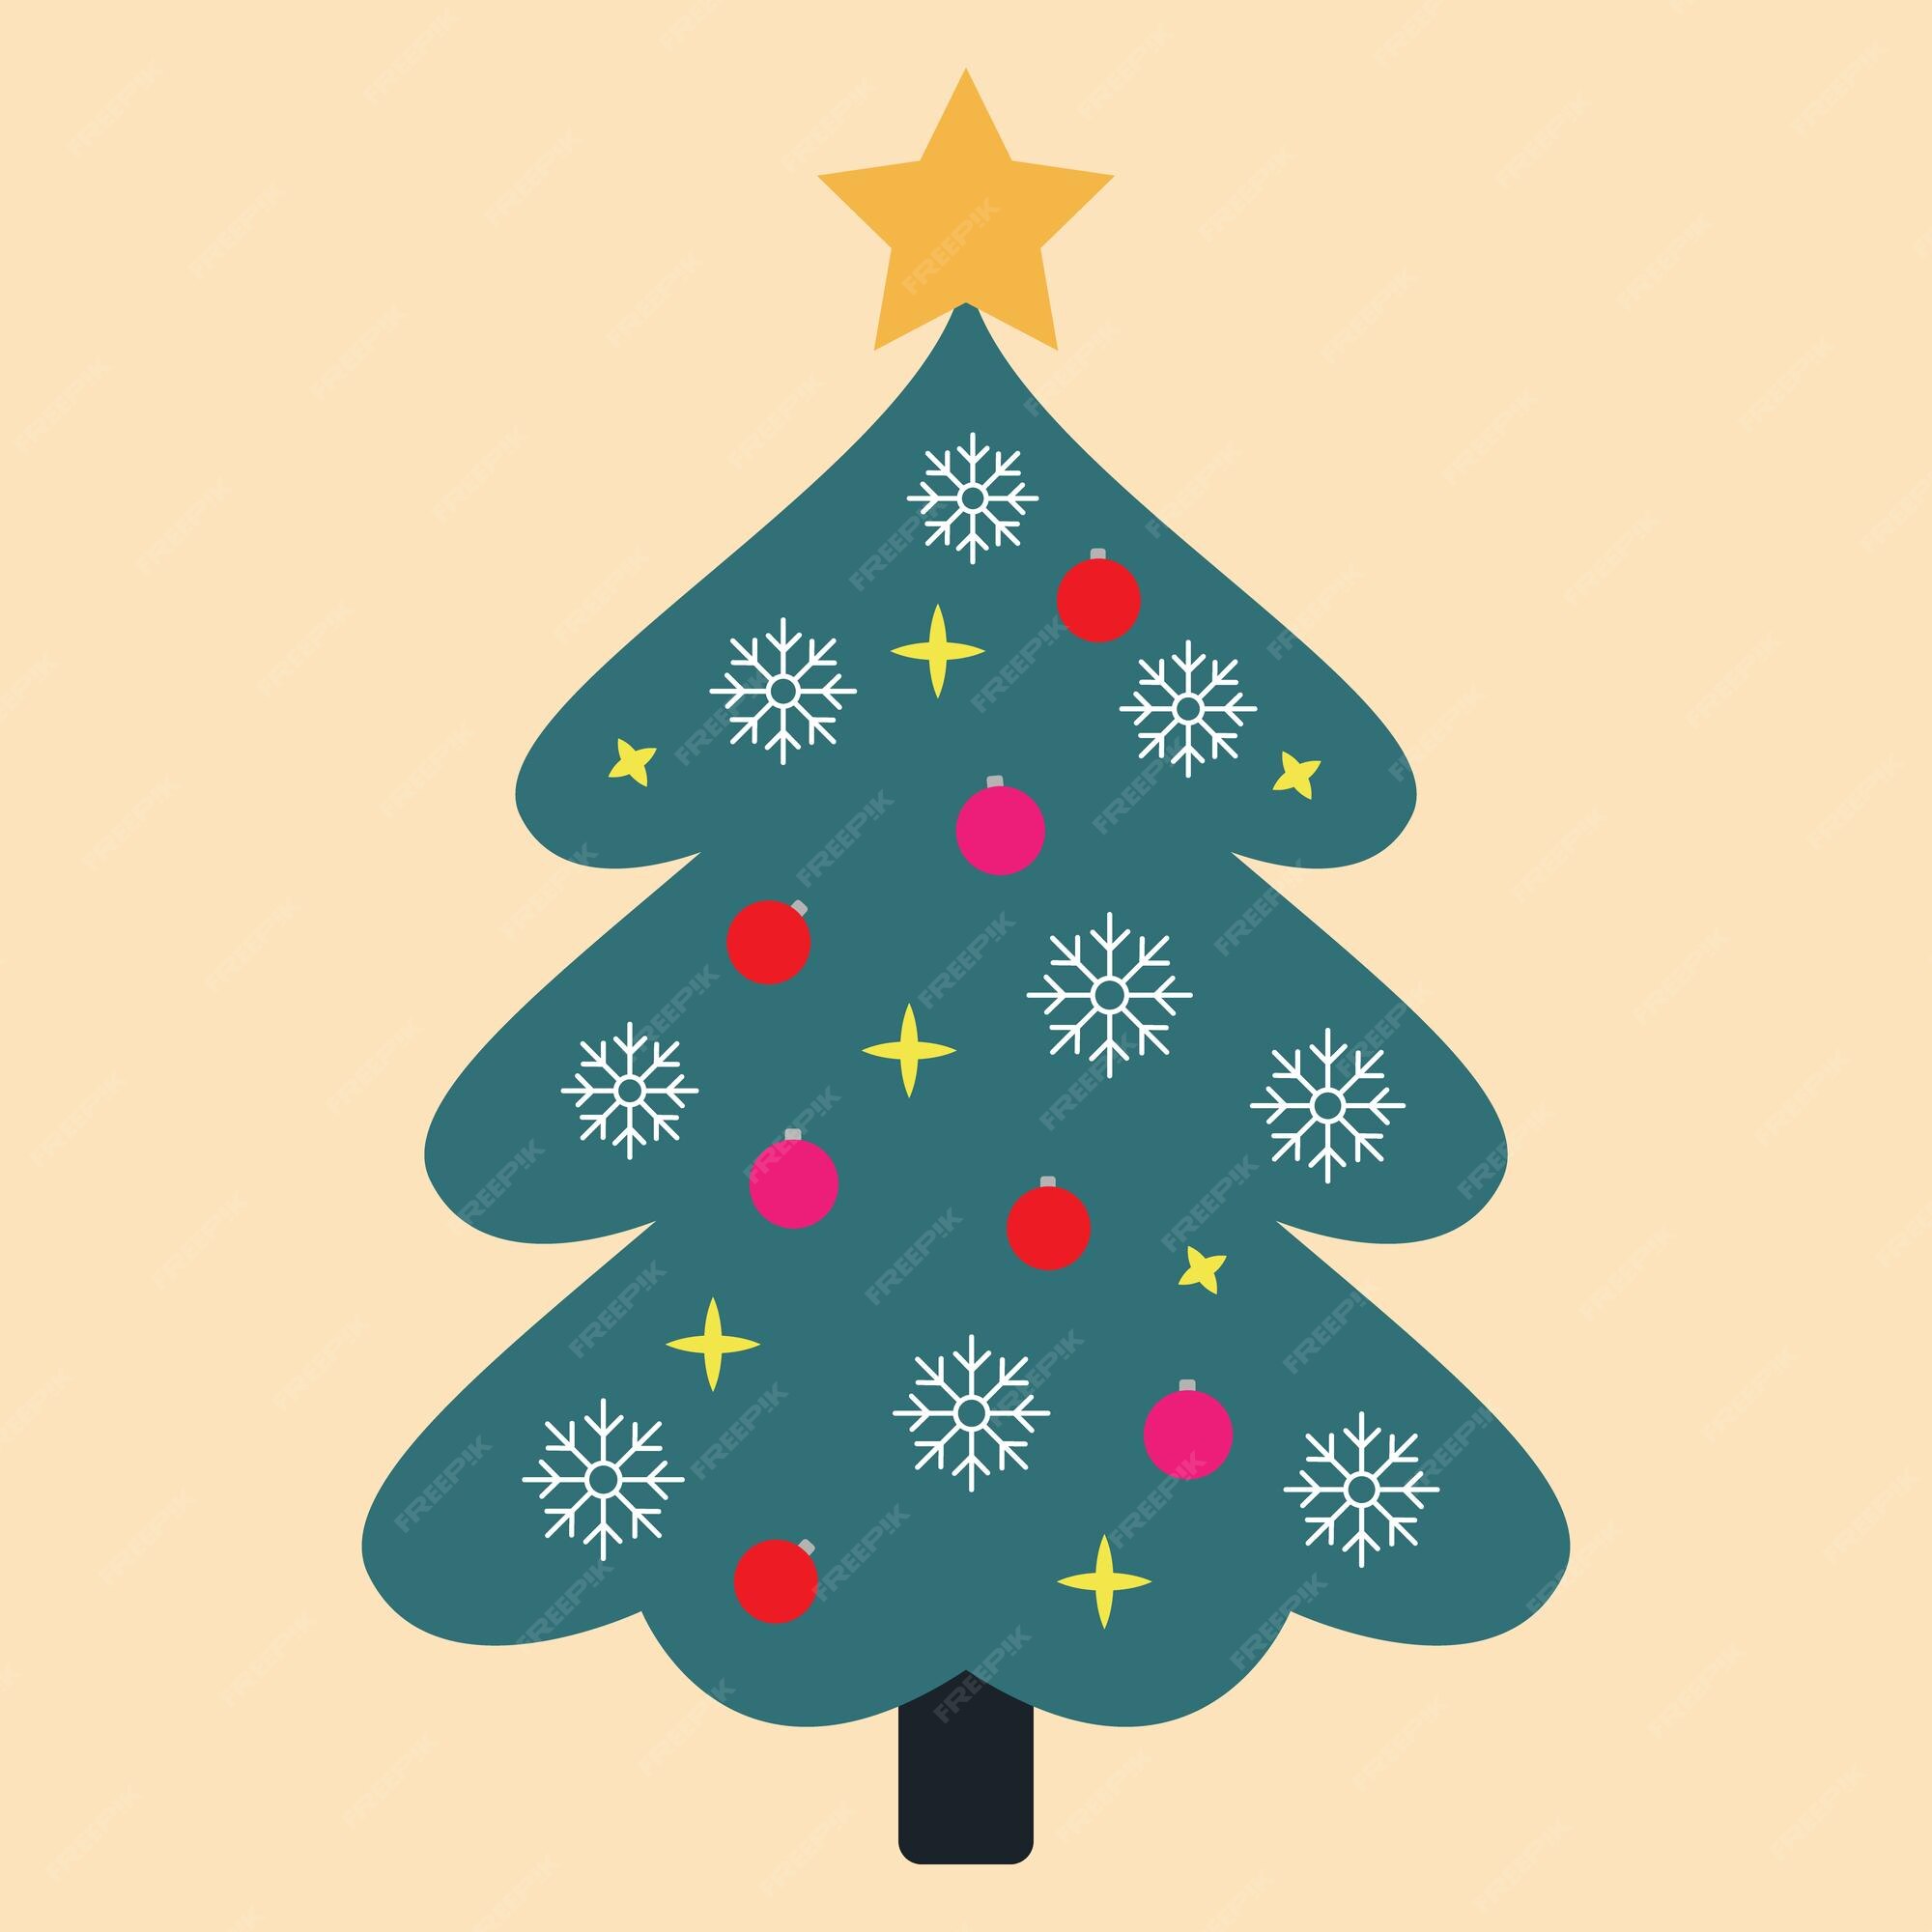 Árbol de navidad árbol de hoja perenne con adornos y regalos juguetes concepto de de navidad y año nuevo dibujo colorido de estilo de dibujos animados | Vector Premium